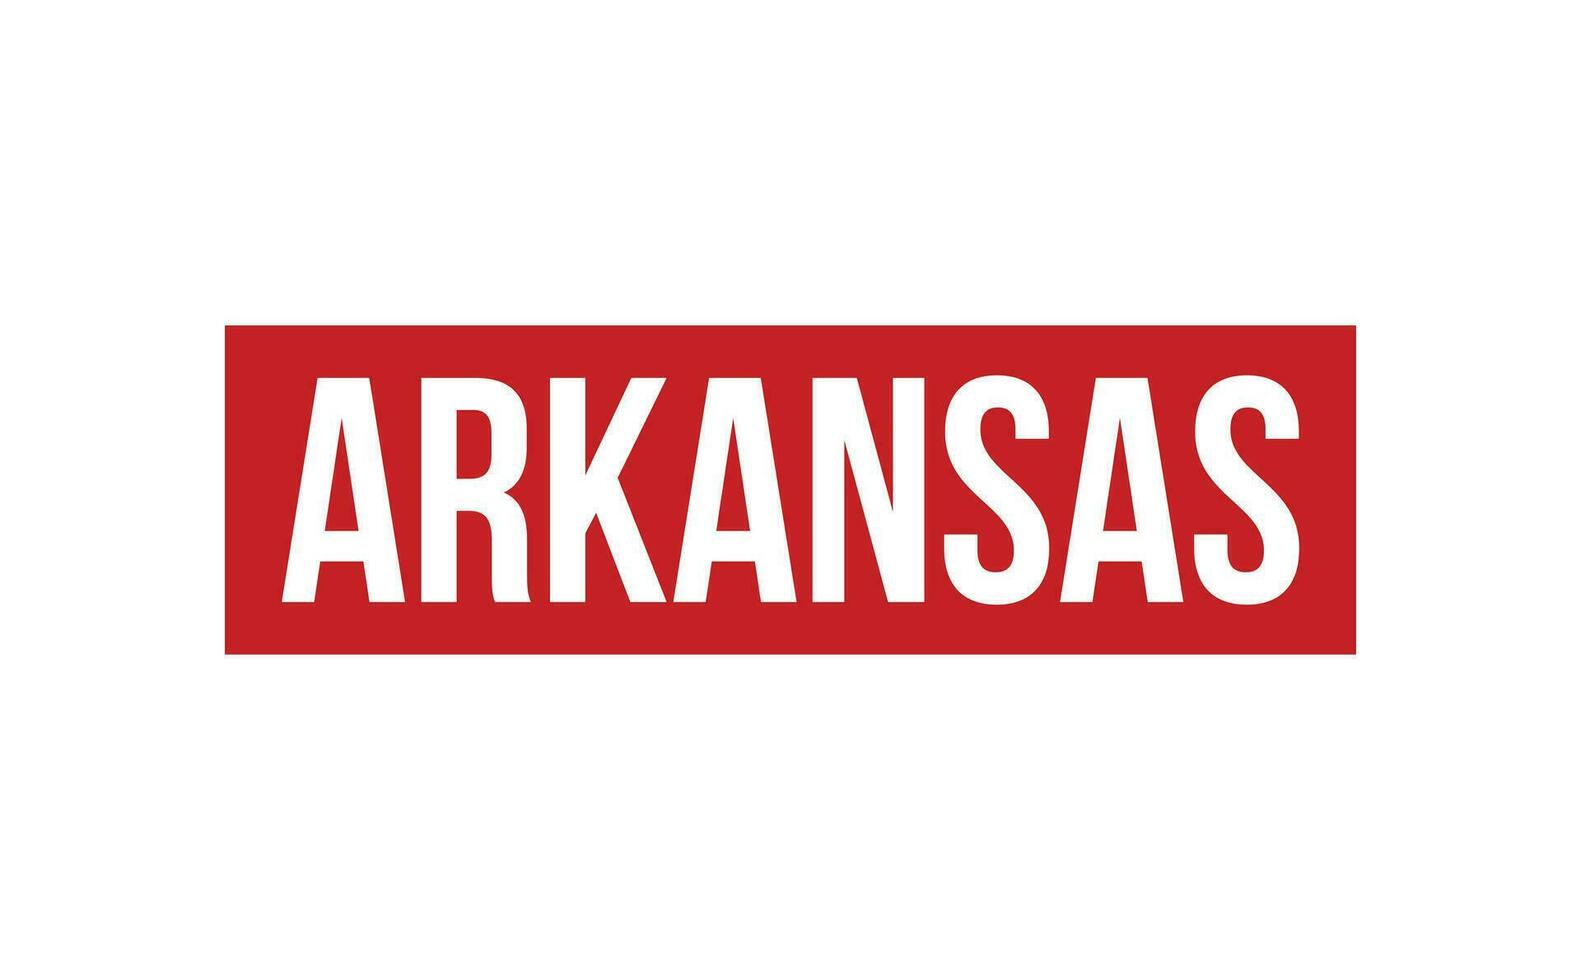 Arkansas caucho sello sello vector